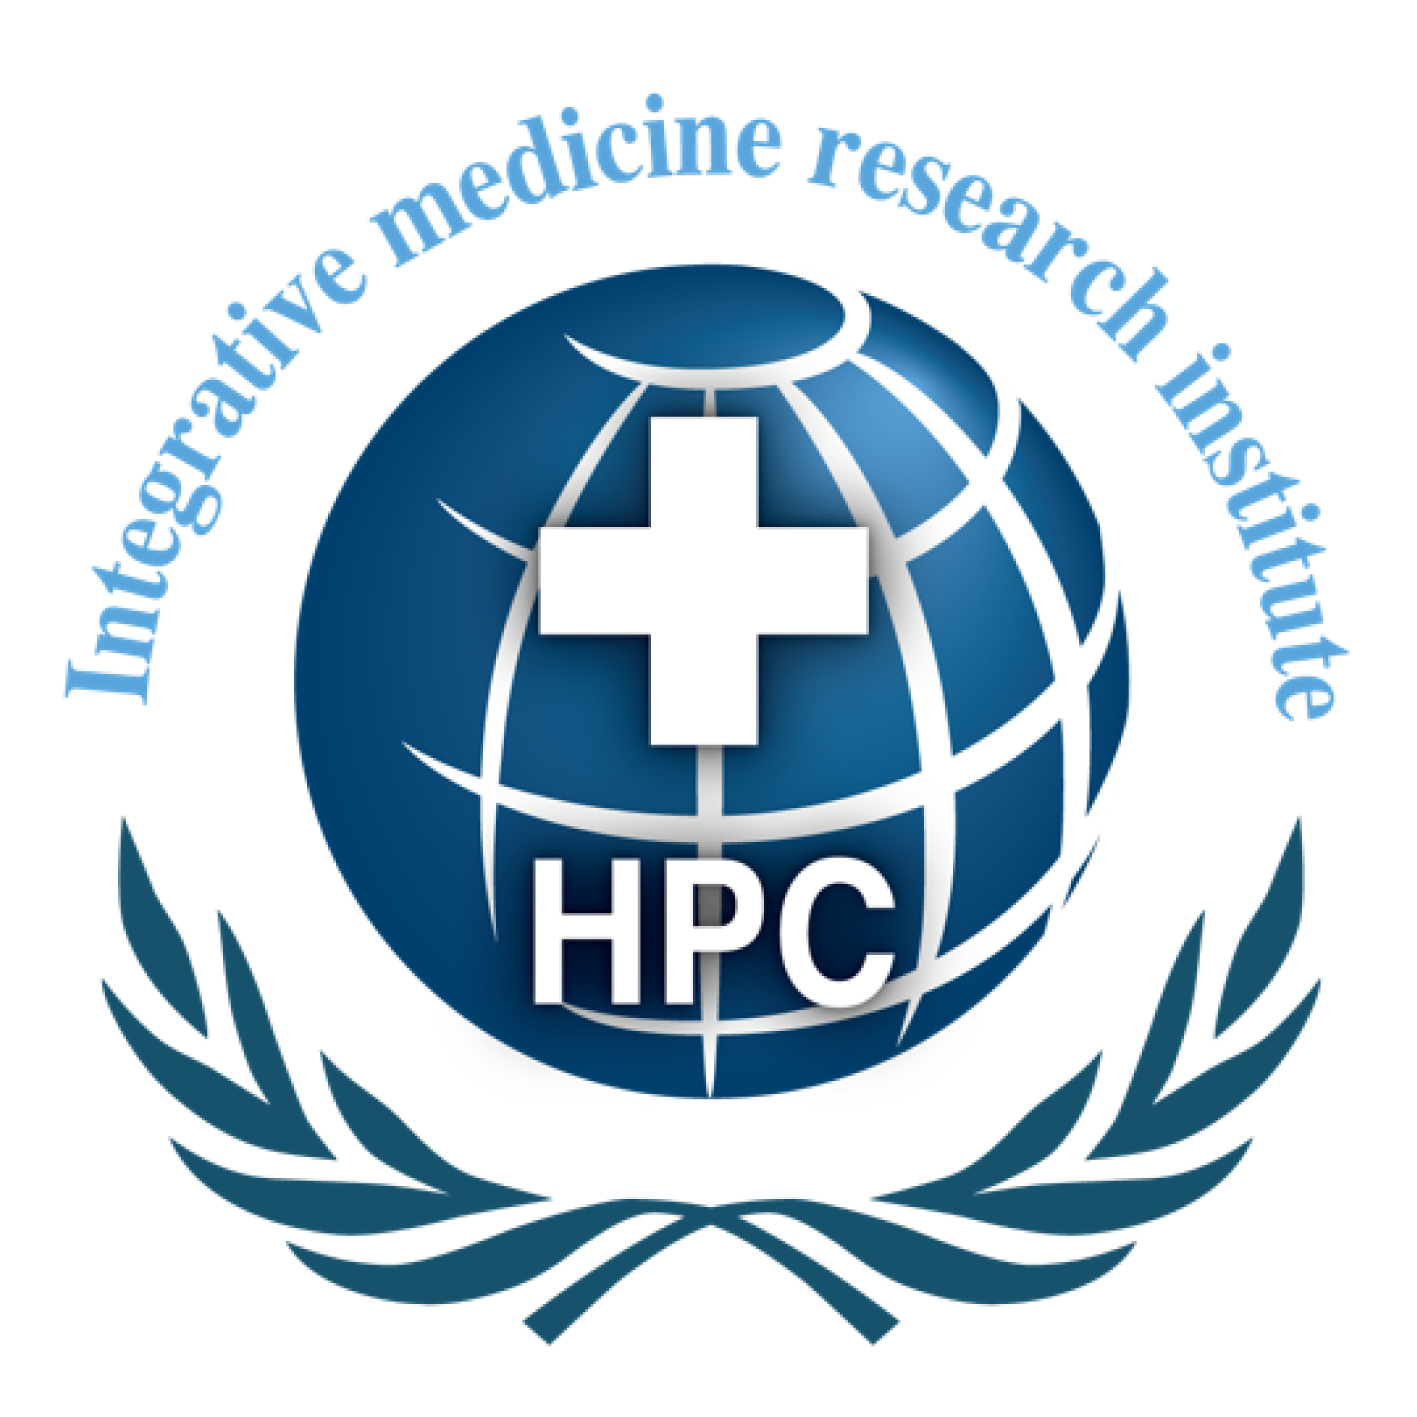 HPC Intergrative medicine research Institute Co.,Ltd